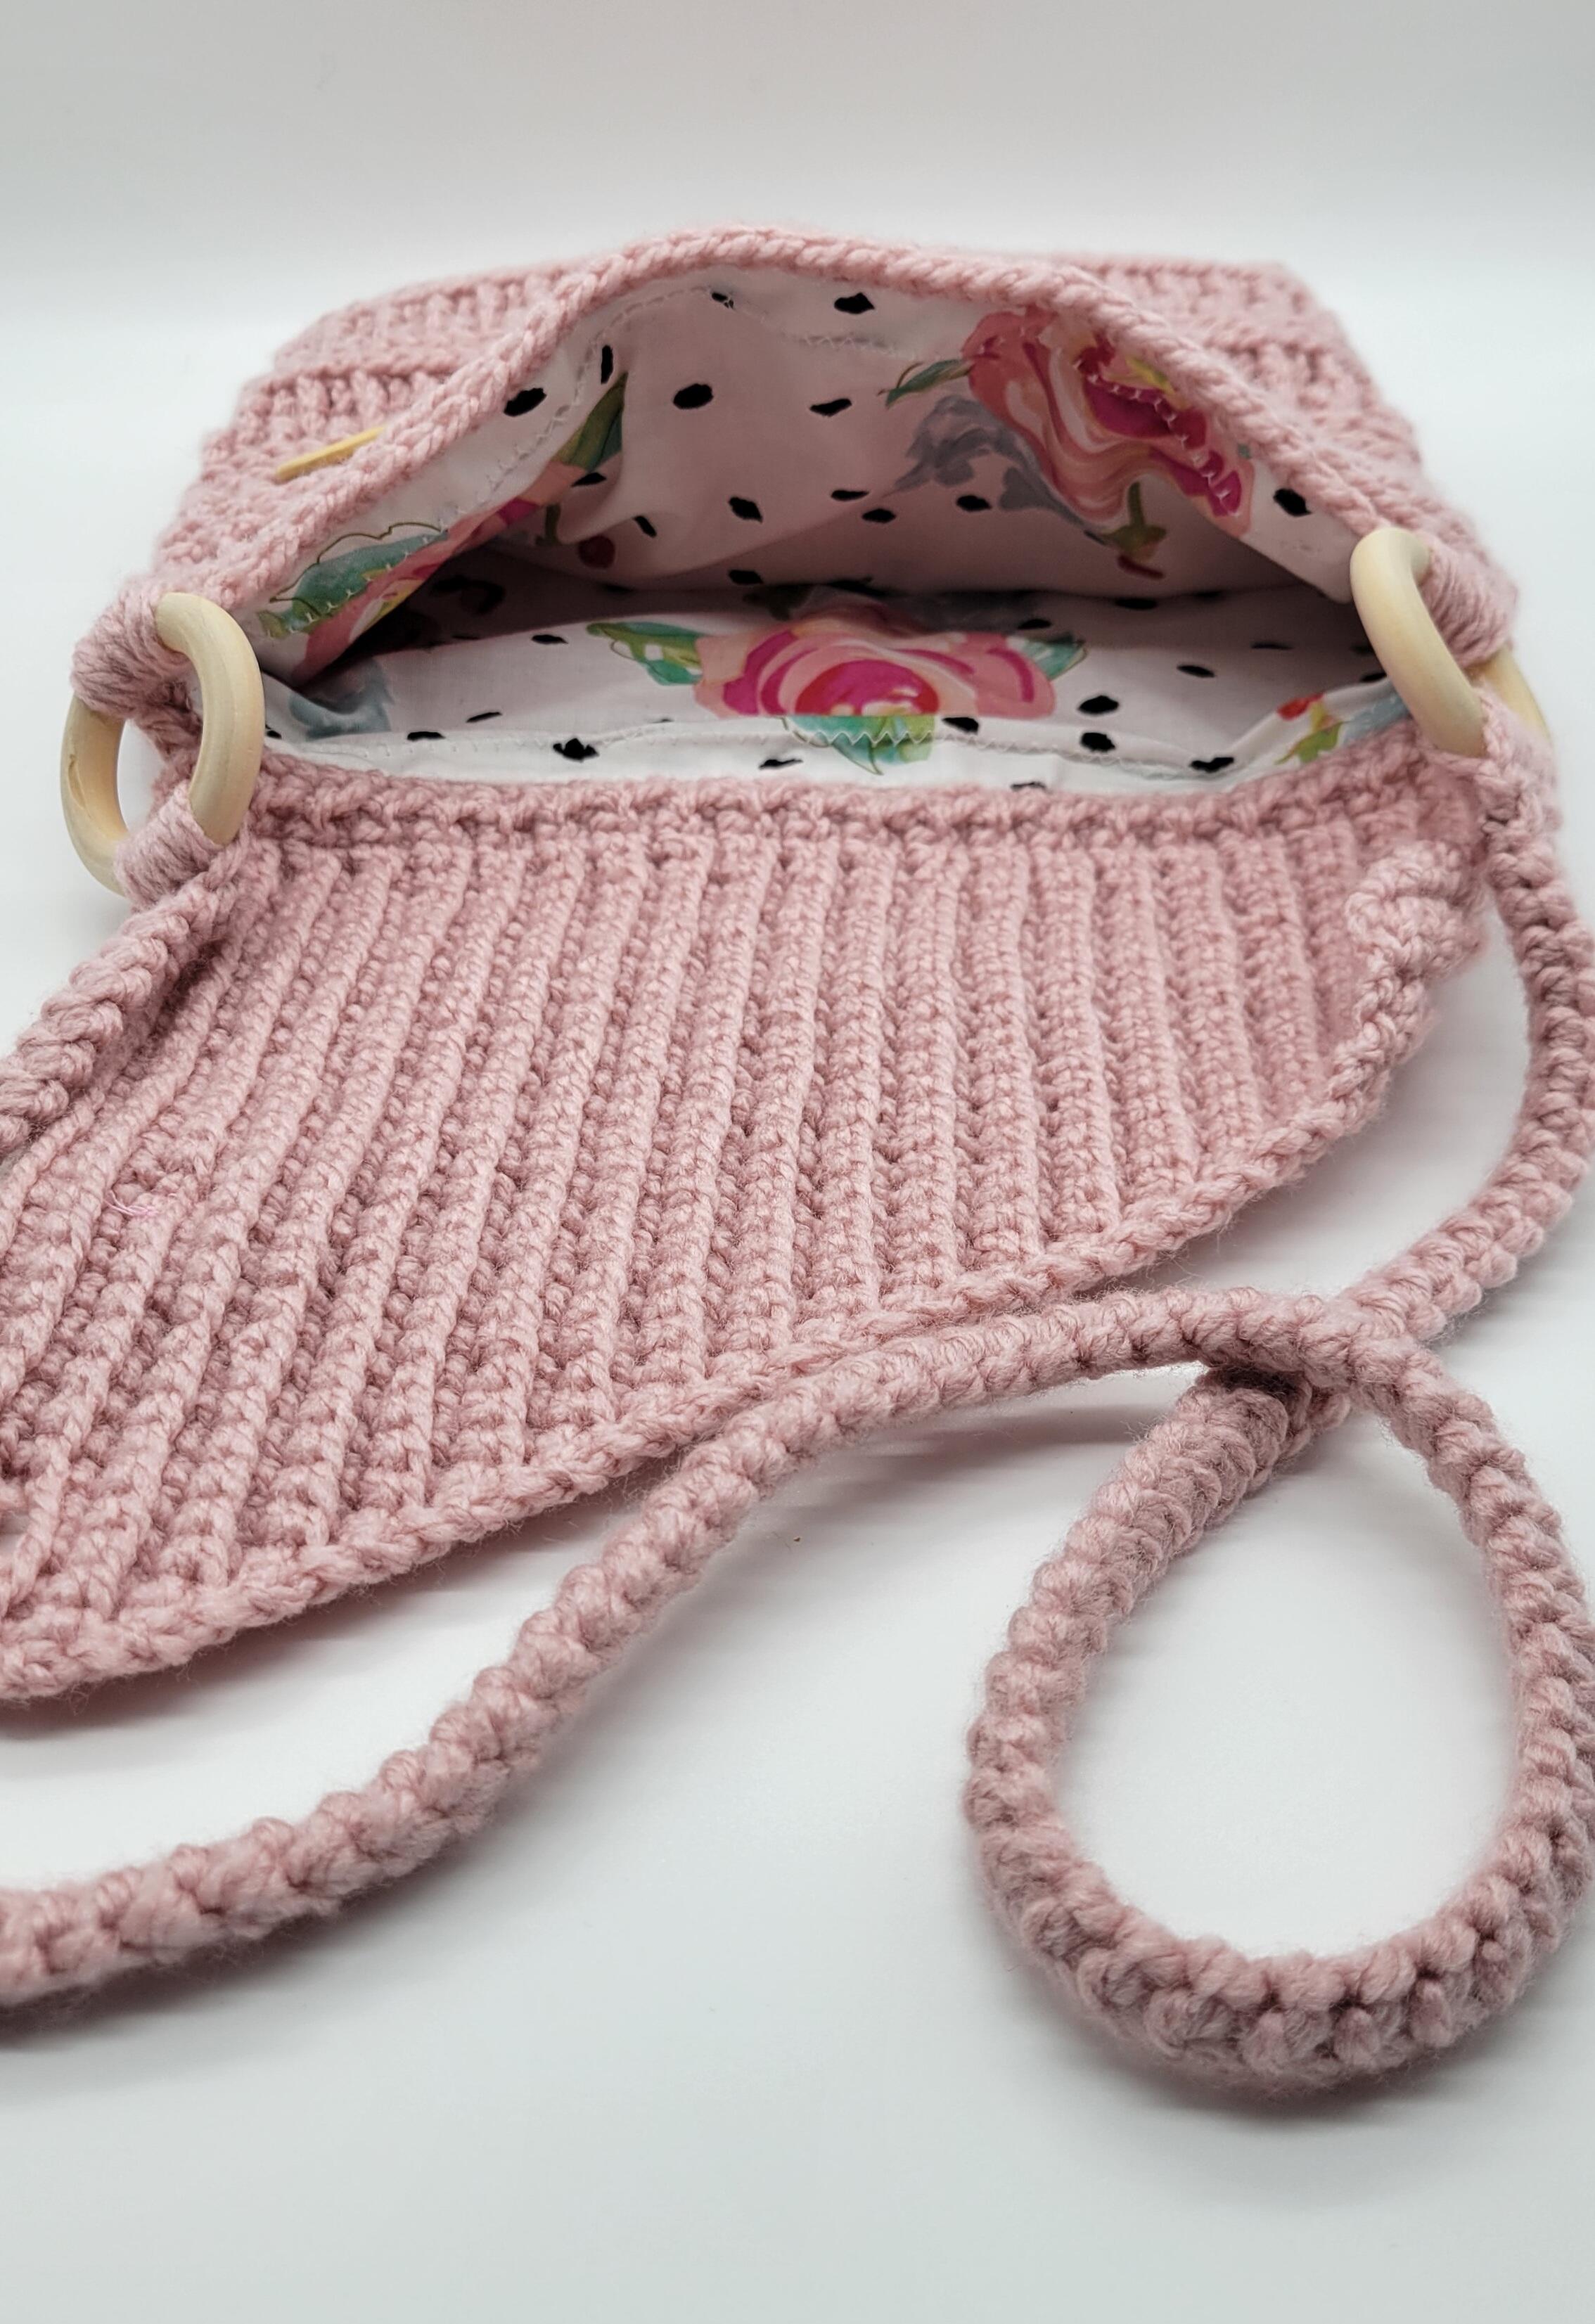 Baby & Kids Crochet Accessories Patterns - Henny Penny Purse Crochet Pattern